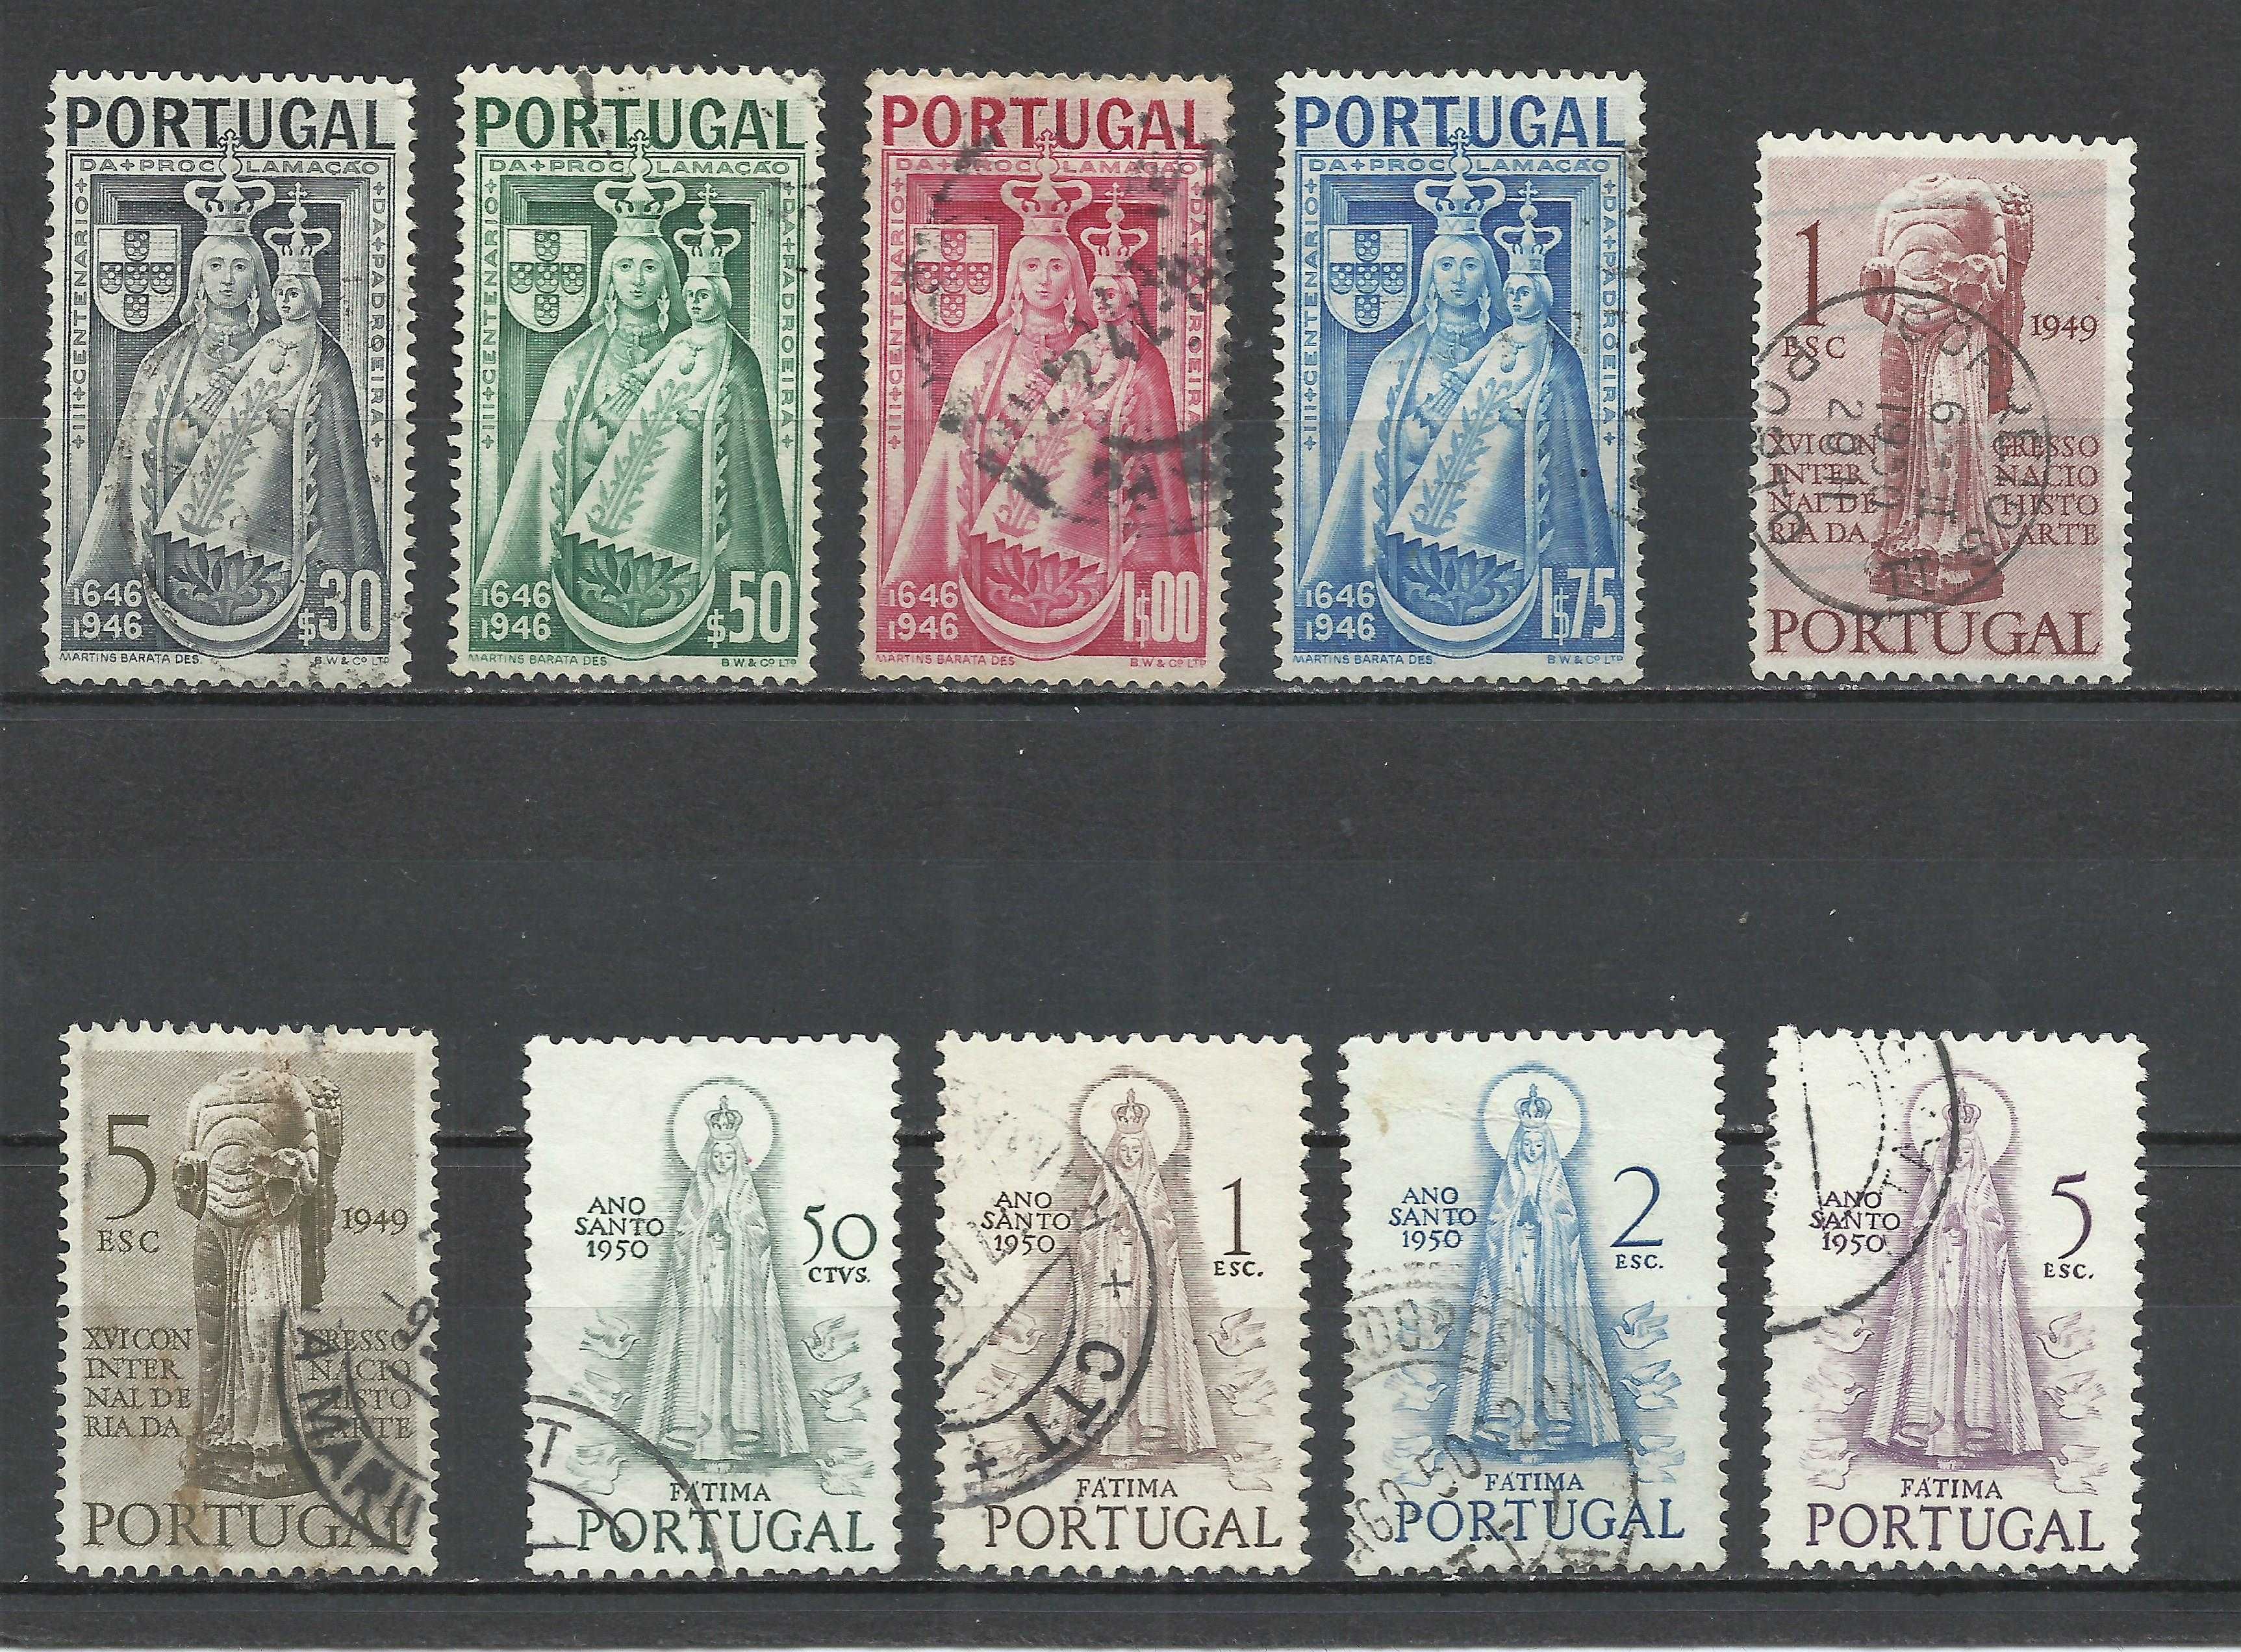 Selos portugueses – 5 séries entre 1945 e 1950 - usados